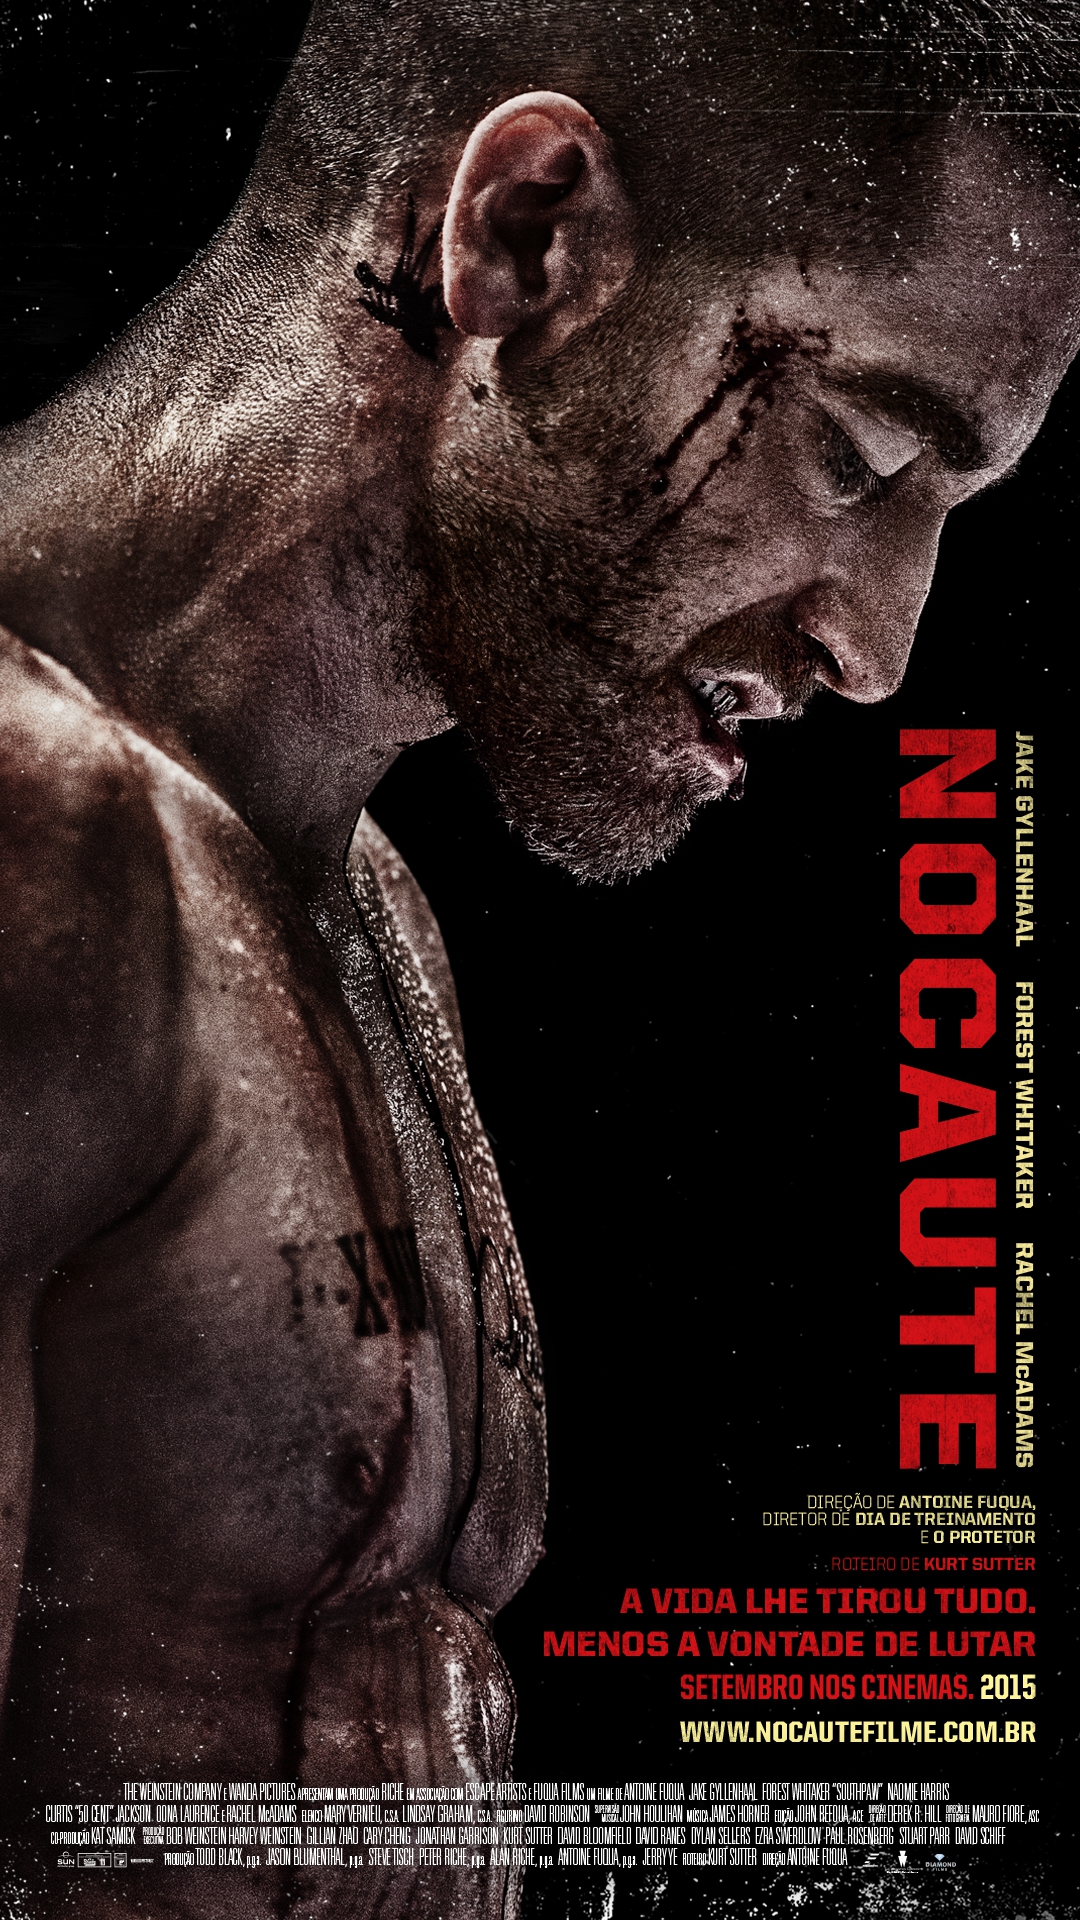  Nocaute (2015) Poster 